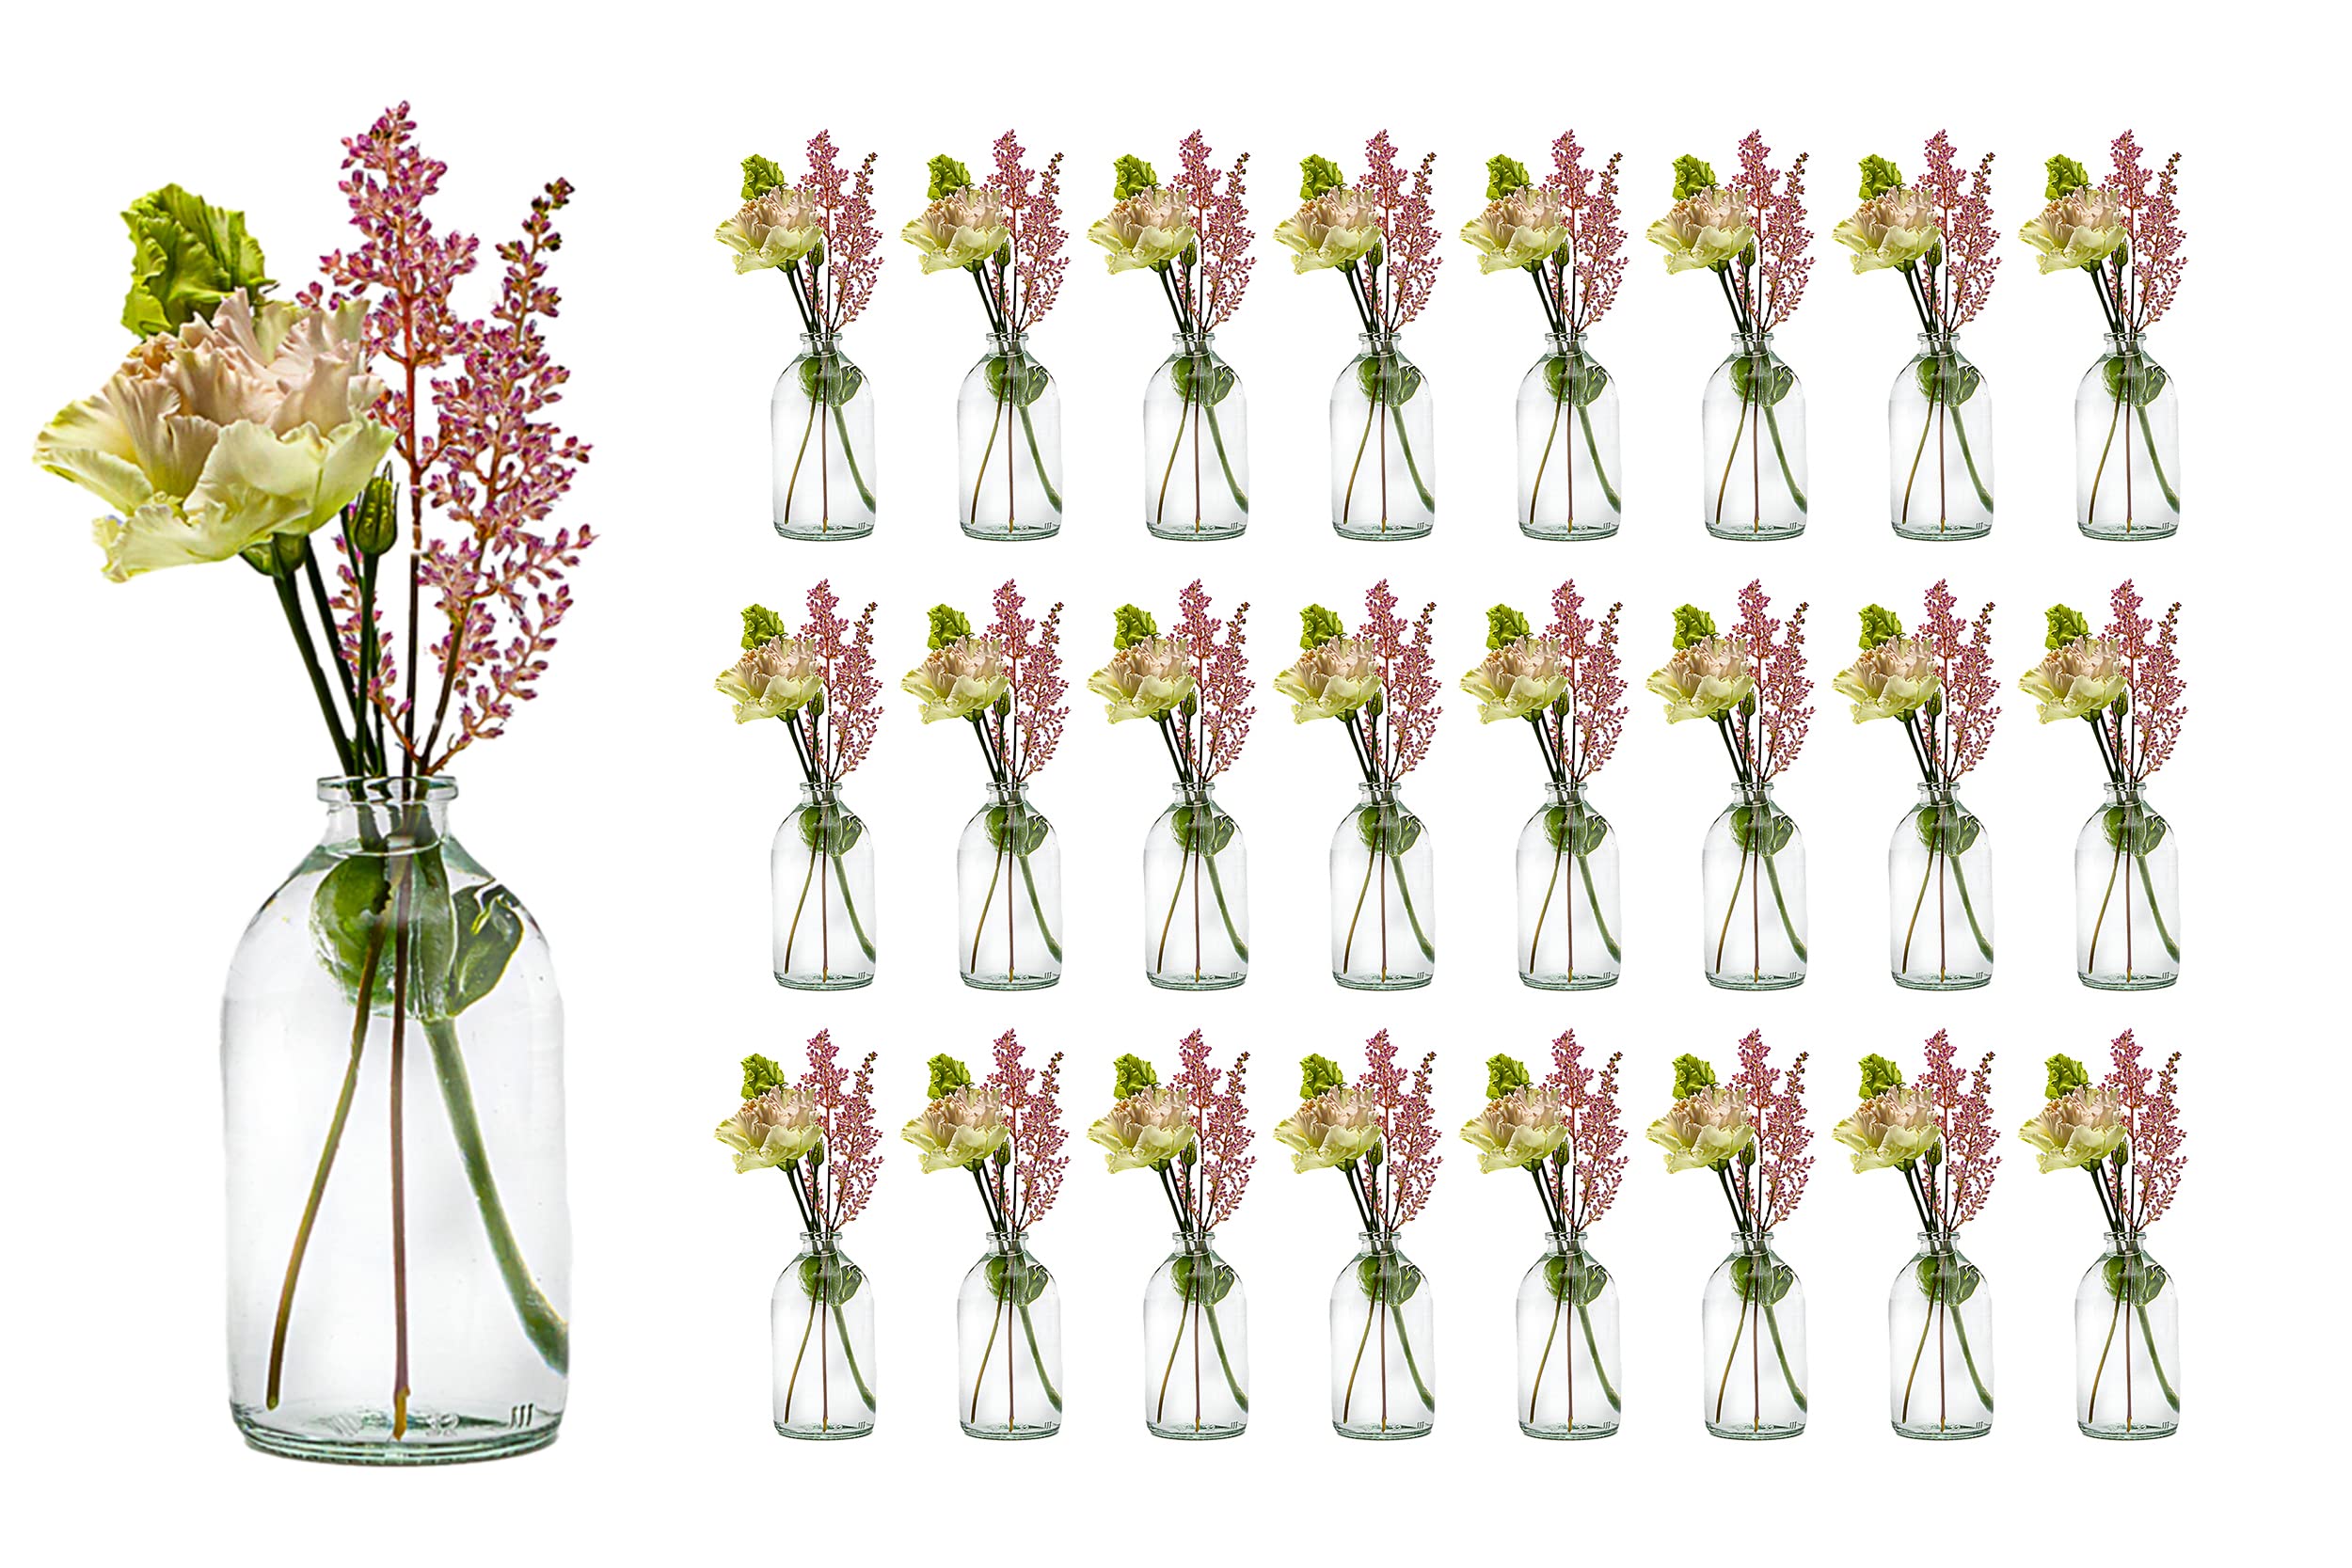 Pas Cher casavetro Lot de 24 Mini vases en Verre en Forme de Bouteille pour décoration de Mariage rVyYict8r Haute Quaity